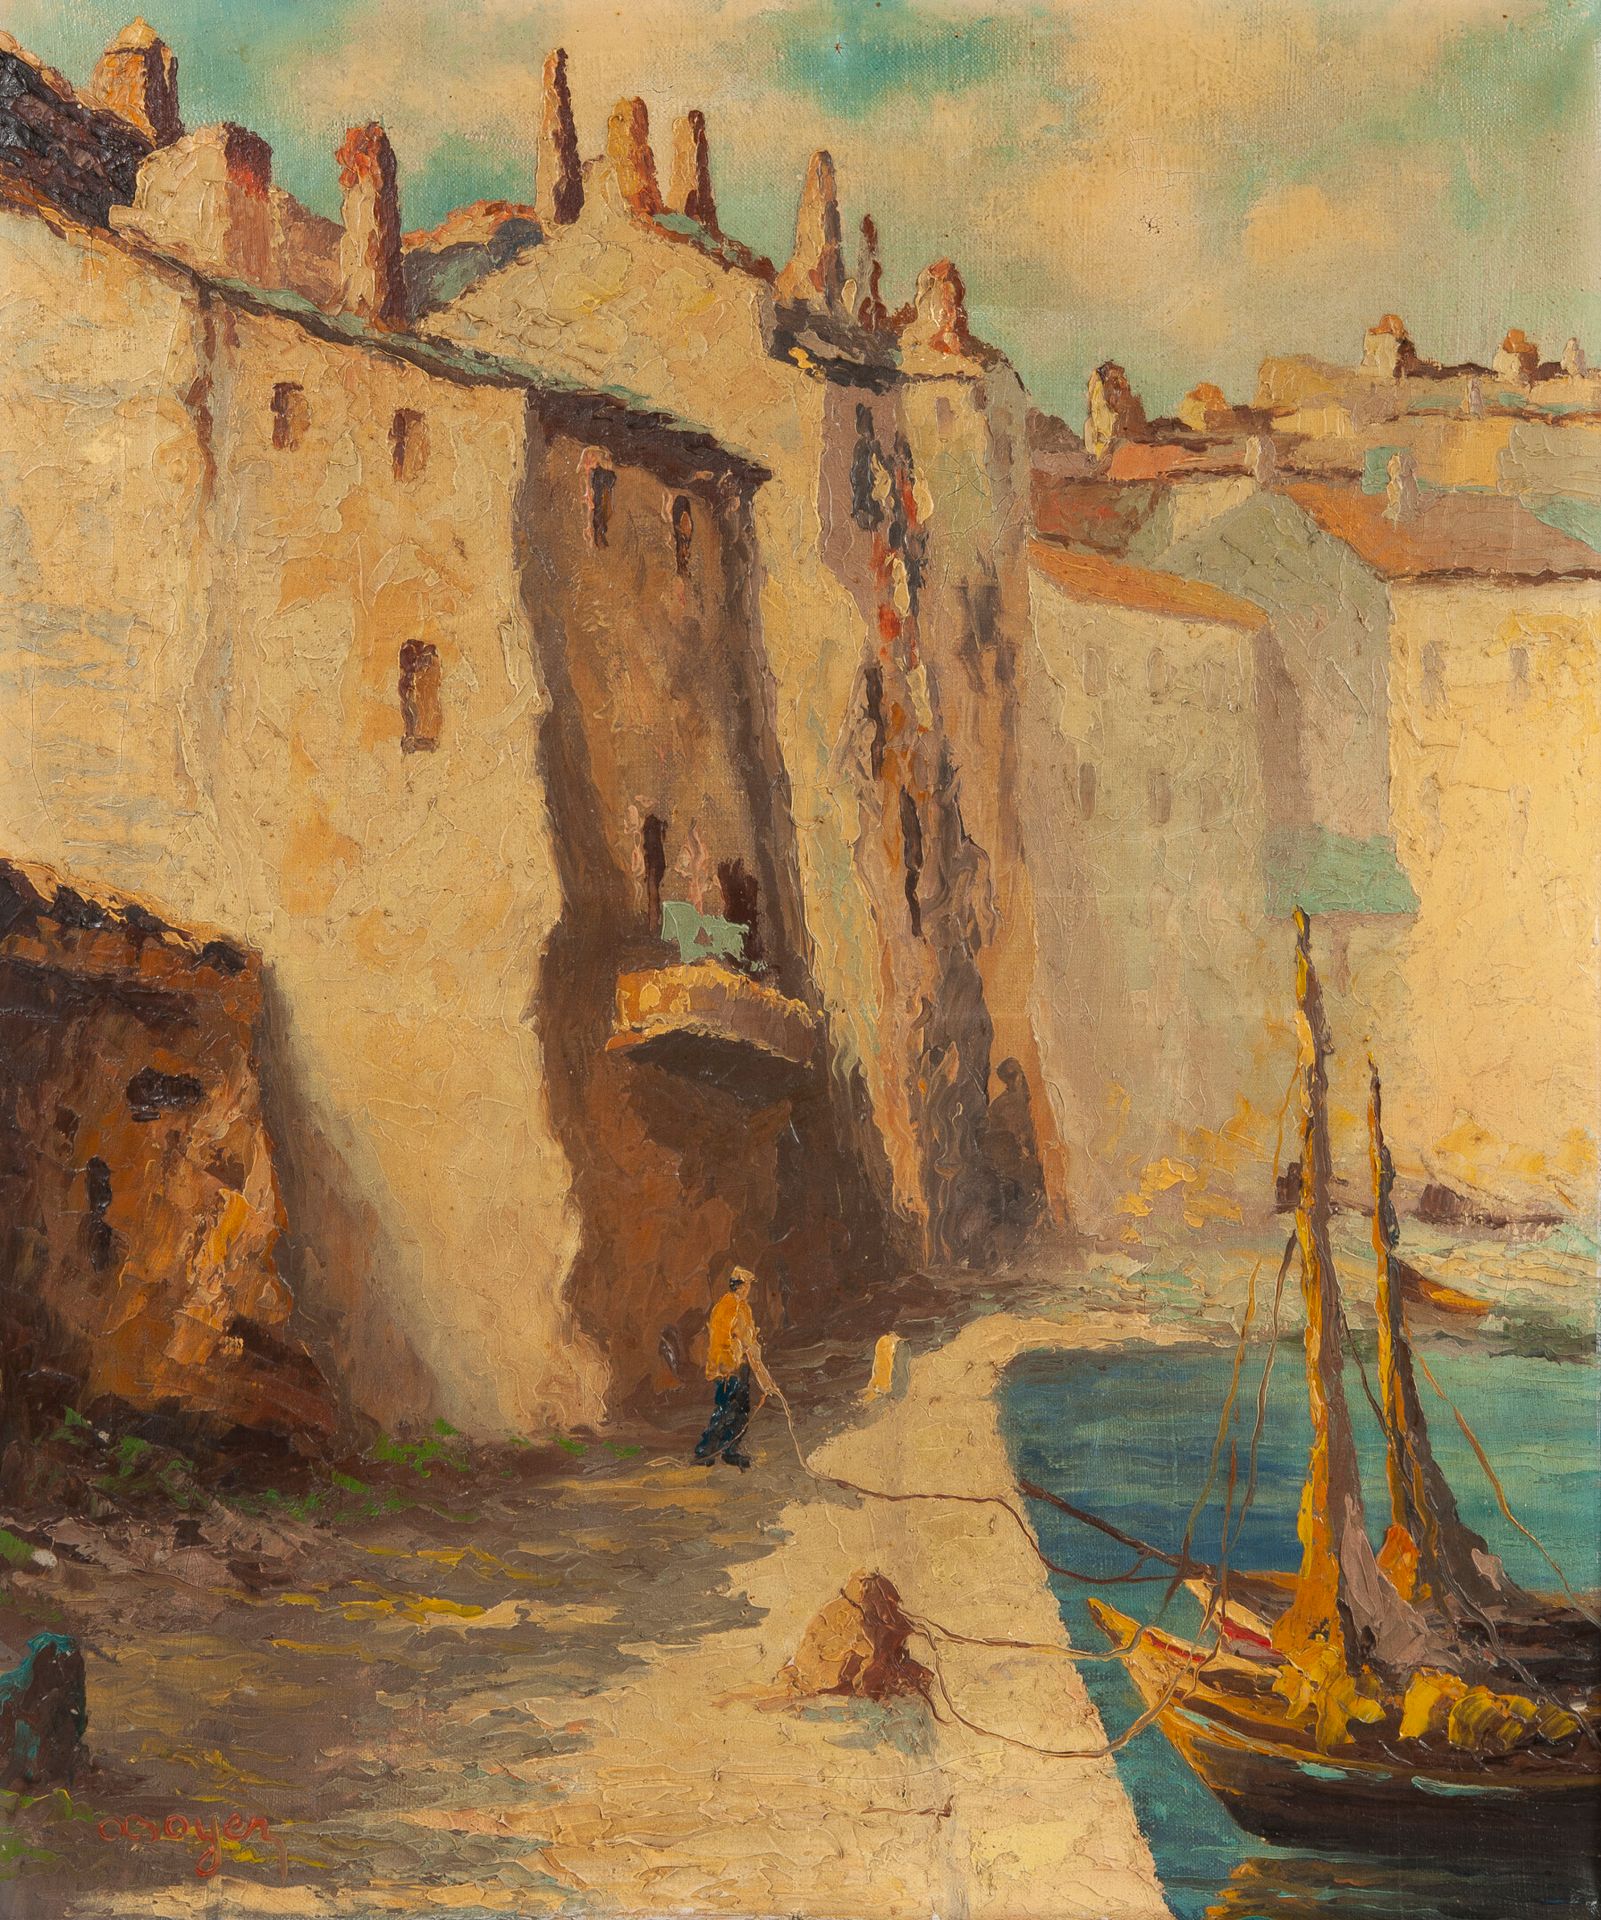 Ecole du XXème siècle 地中海港口。

布面油画。

左下角有签名 "OBoyer"。

55 x 46厘米。

小的凹痕和裂缝。